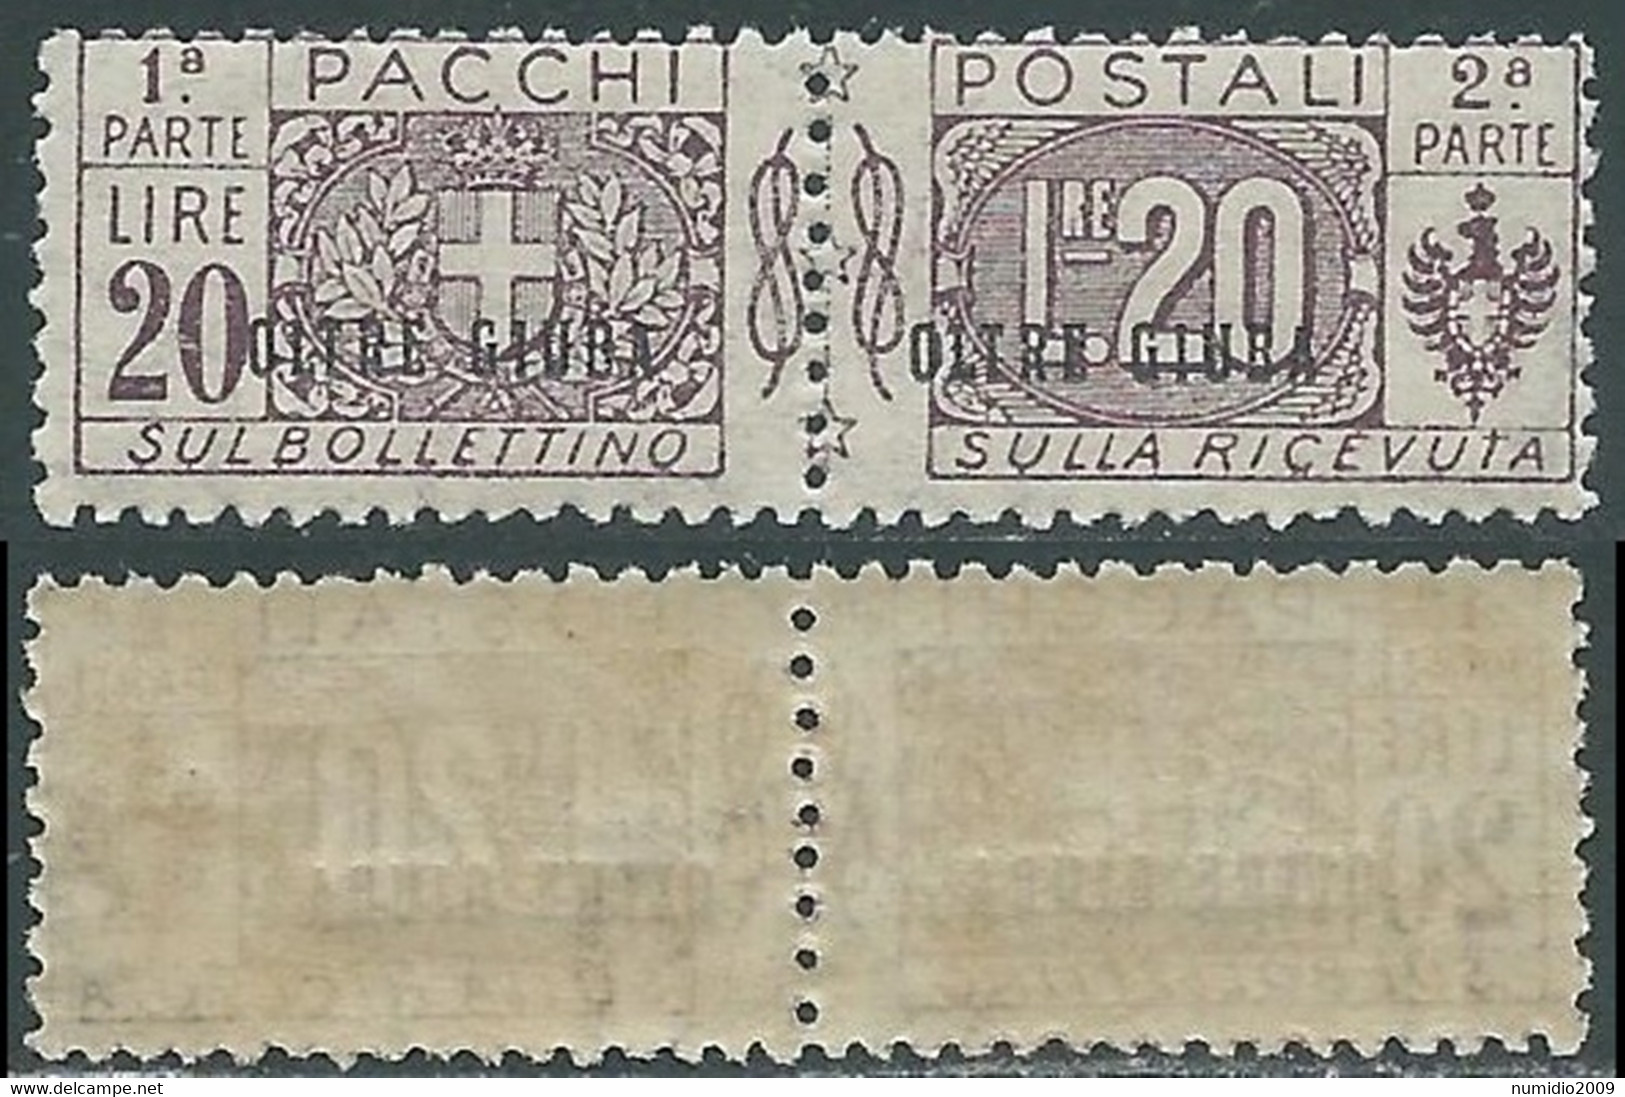 1925 OLTRE GIUBA PACCHI POSTALI 20 LIRE MNH ** - E201 - Oltre Giuba